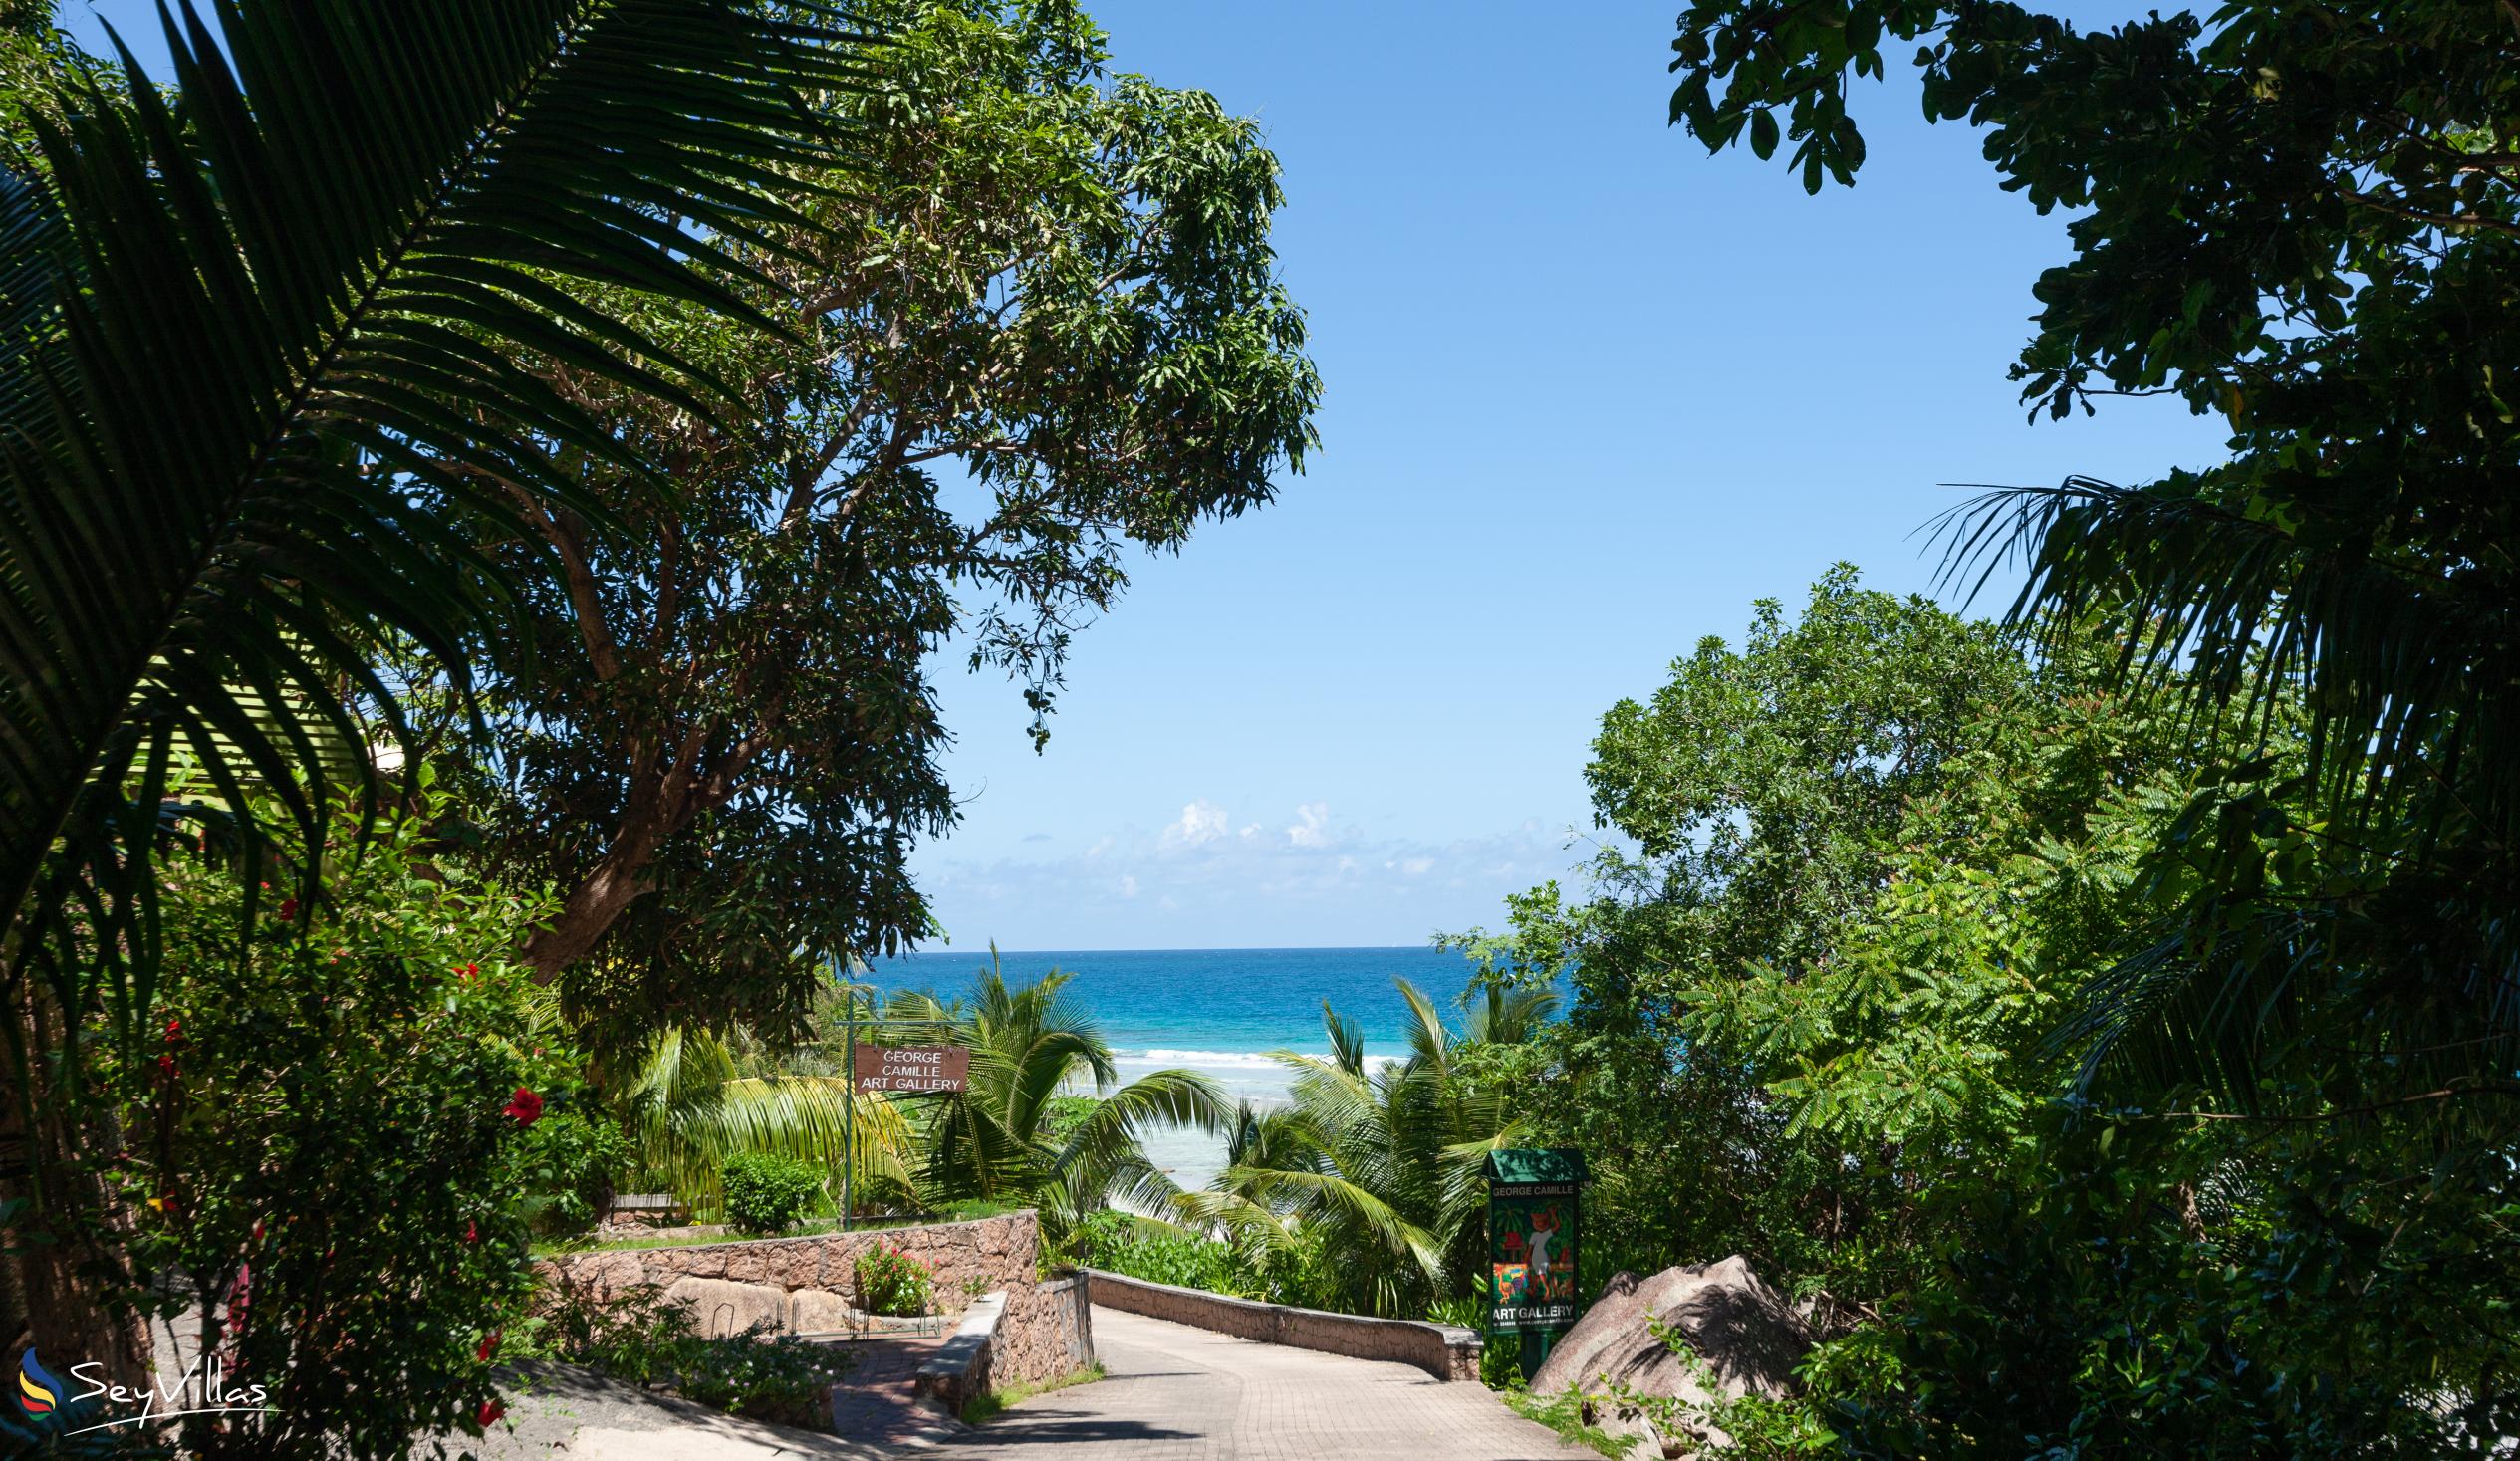 Foto 20: Anse Grosse Roche Beach Villa - Lage - La Digue (Seychellen)